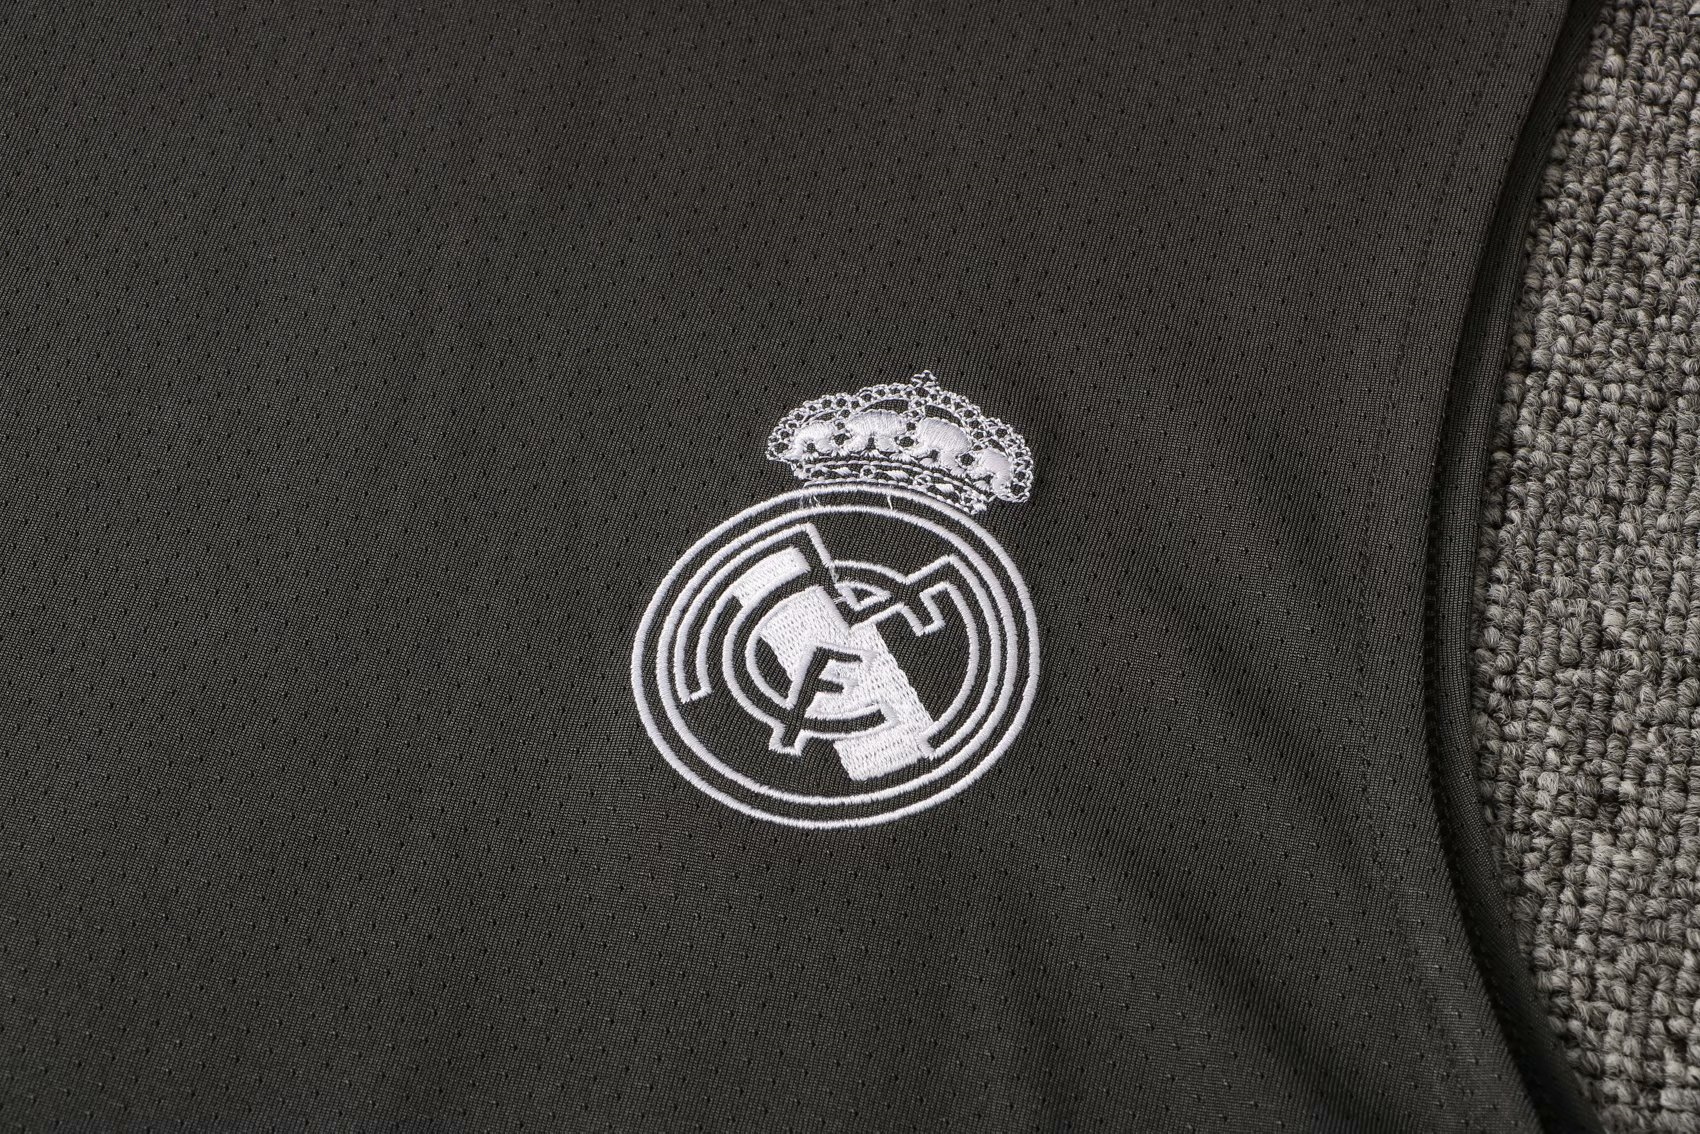 2021/22 Real Madrid Dark Grey Soccer Singlet Jersey Mens